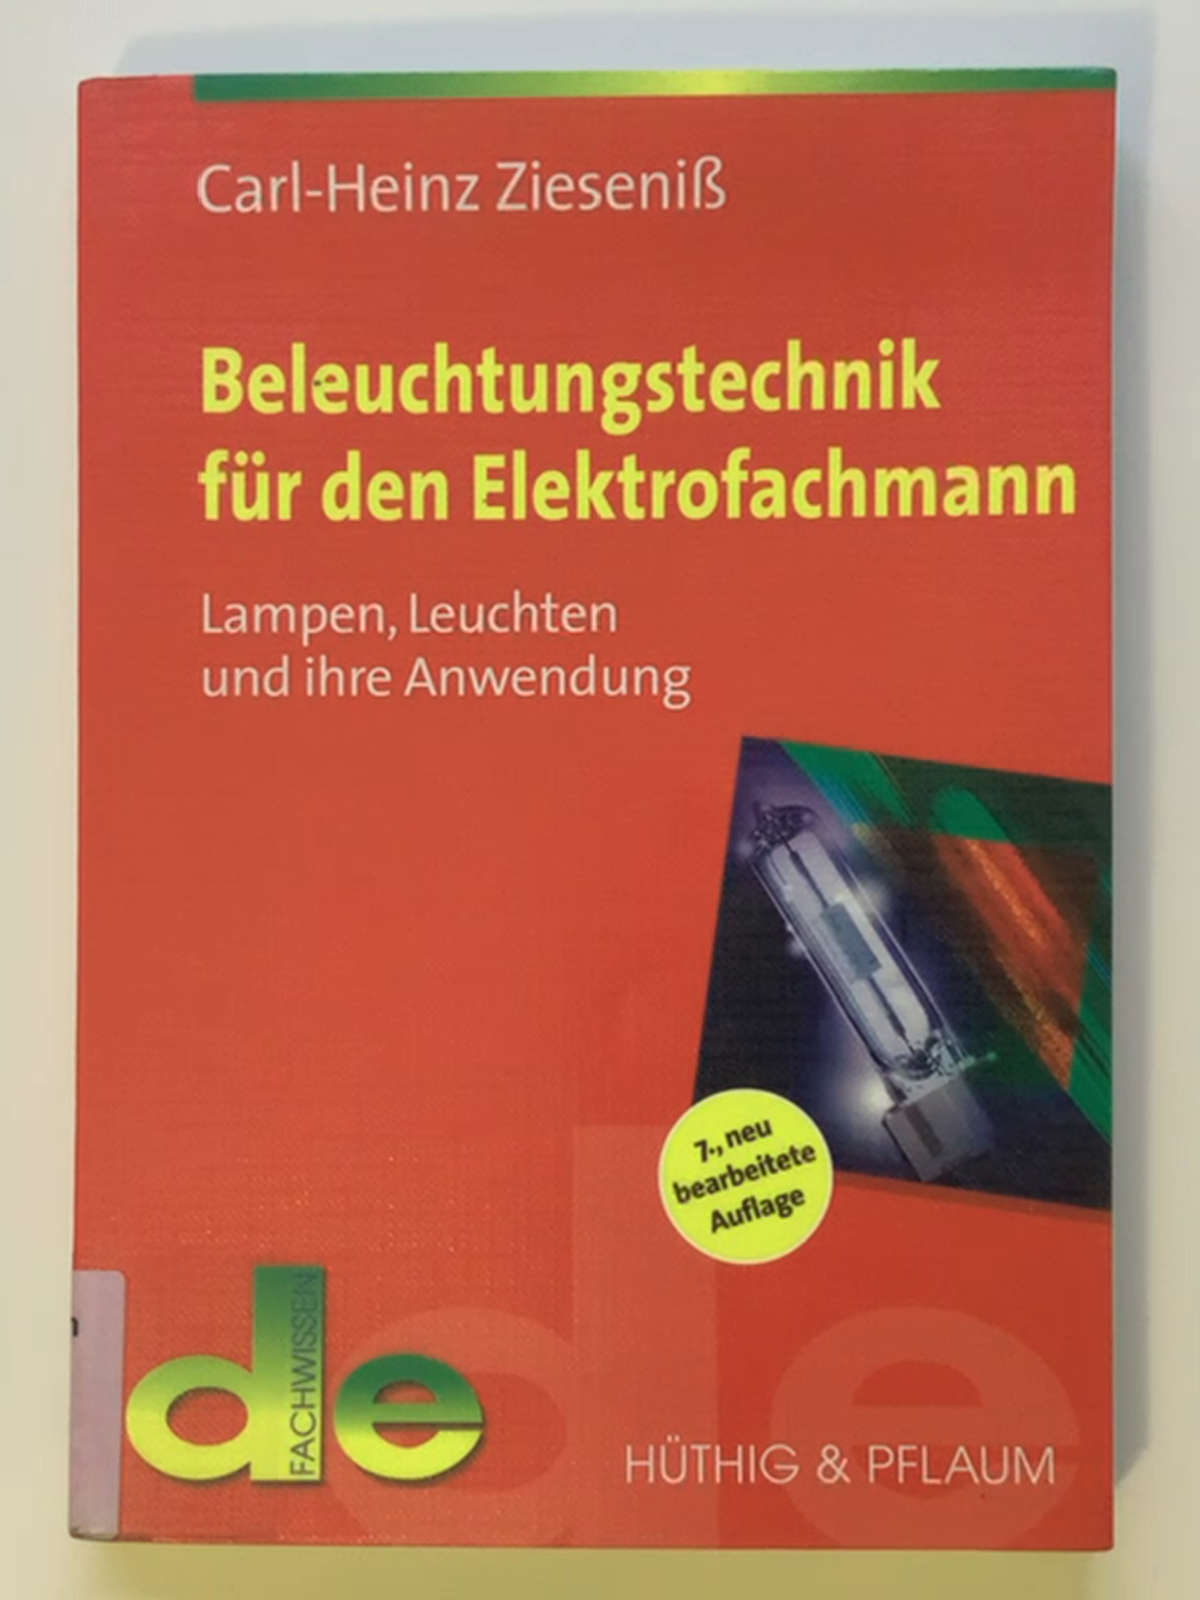 Beleuchtungstechnik für den Elektrofachmann: Lampen, Leuchten und ihre Anwendung (de-Fachwissen) - Carl-Heinz Zieseniß - Frank Lindemuth - Paul W. Schmits